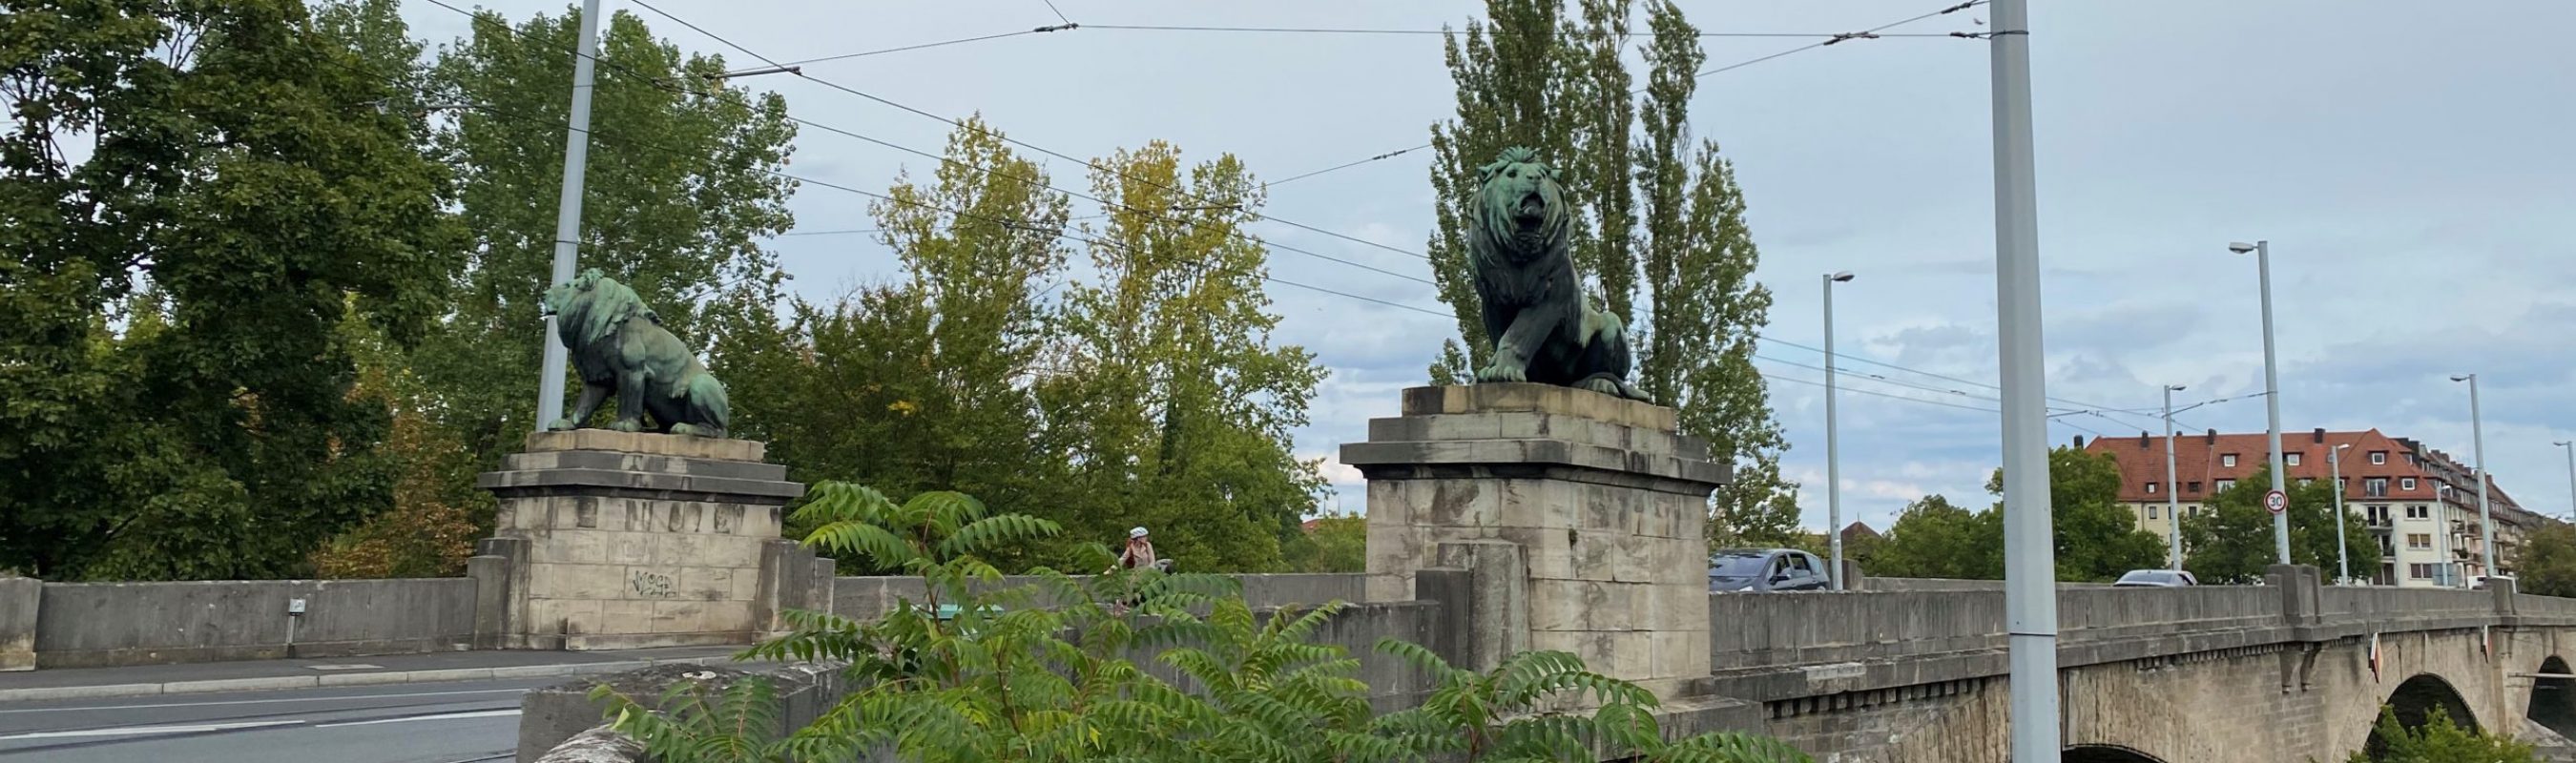 Zwei Löwen auf der Löwenbrücke